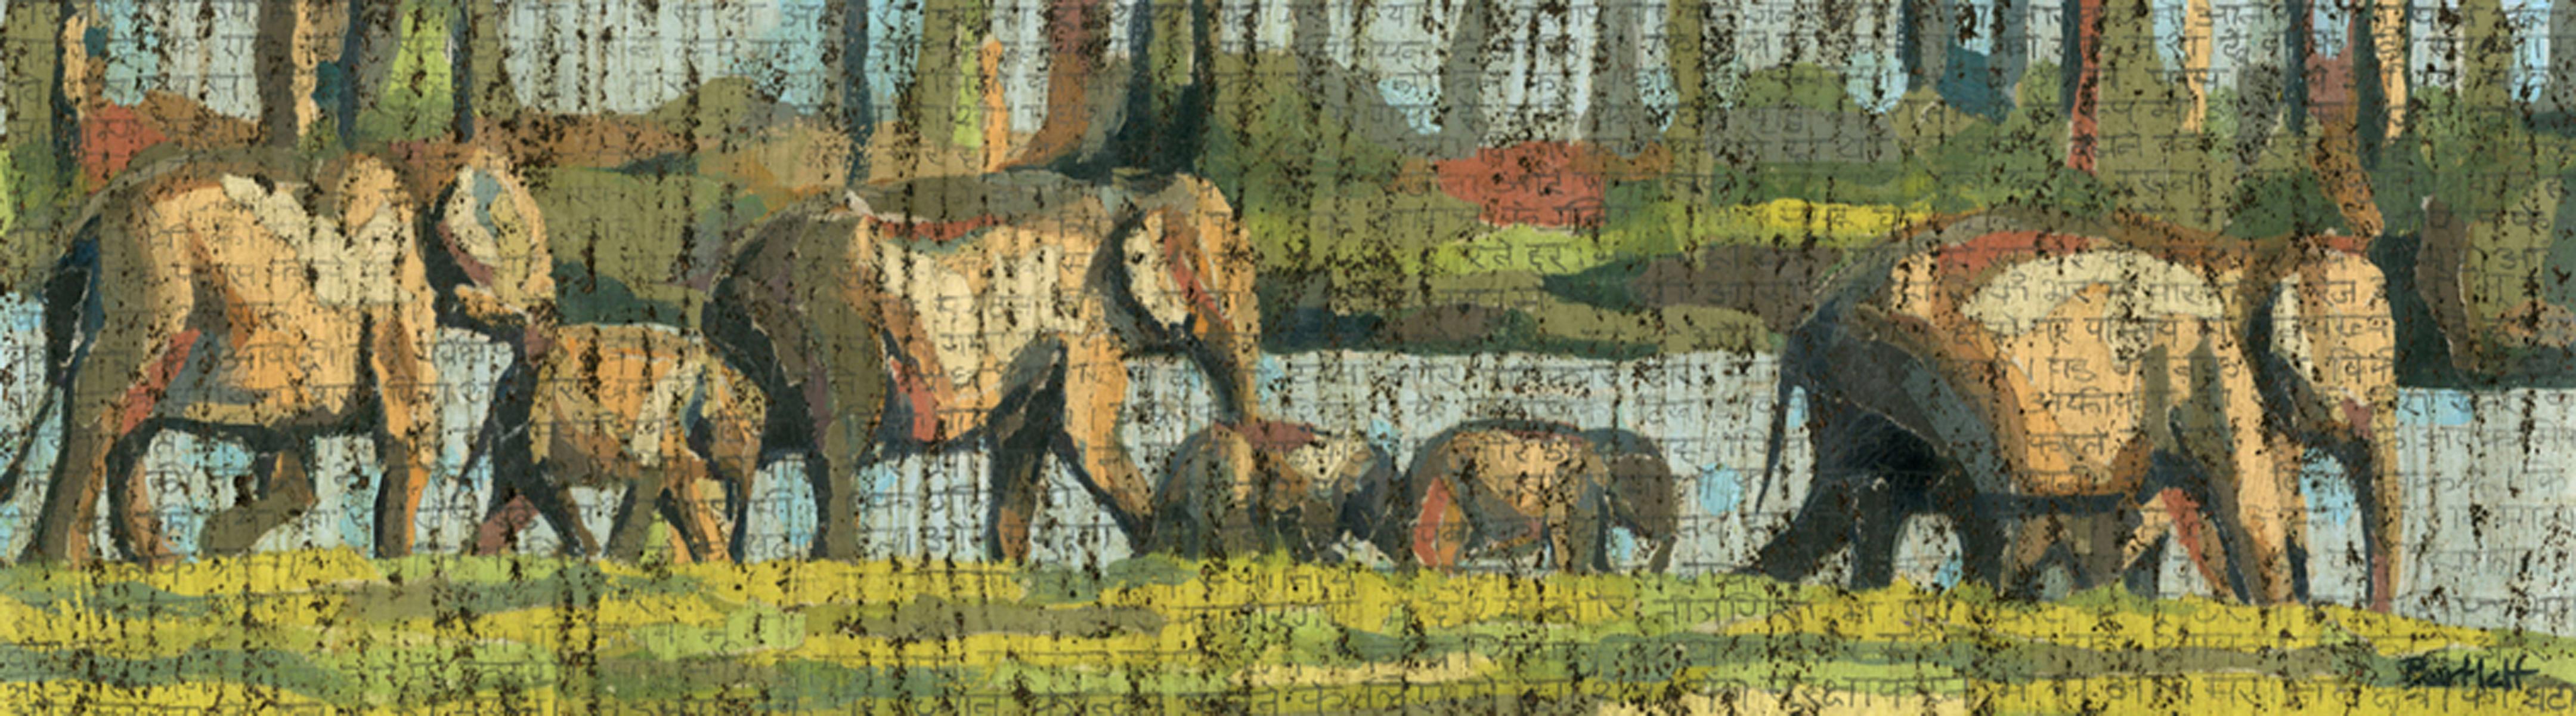 Airavat, Paul Bartlett, Giclee-Druck, Elefantenkunst, Safari-Kunst, Afrikanische Kunst